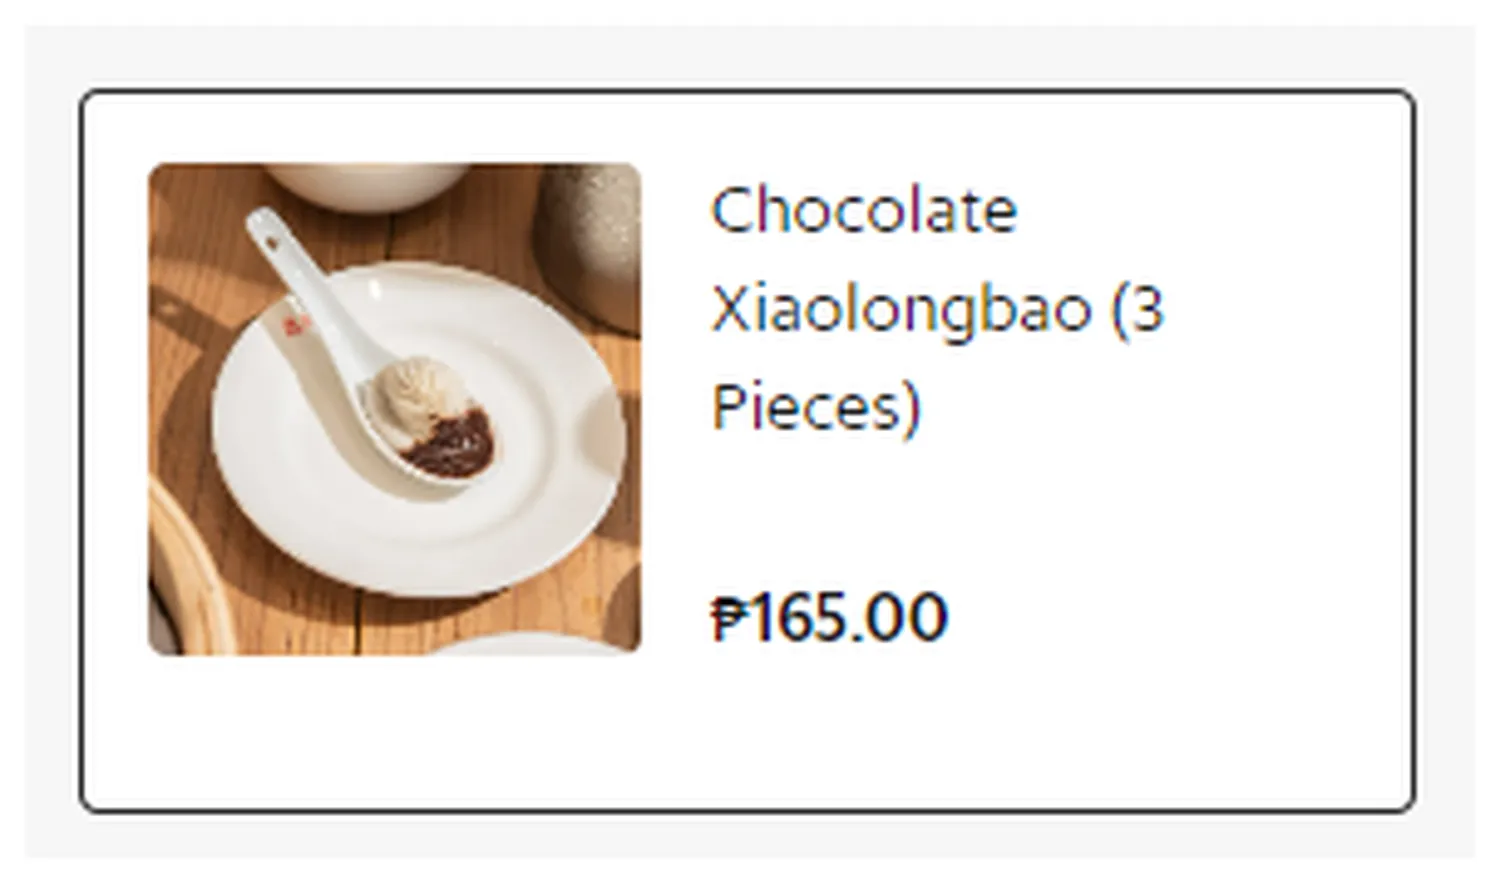 din tai fung menu philippine hot cold desserts